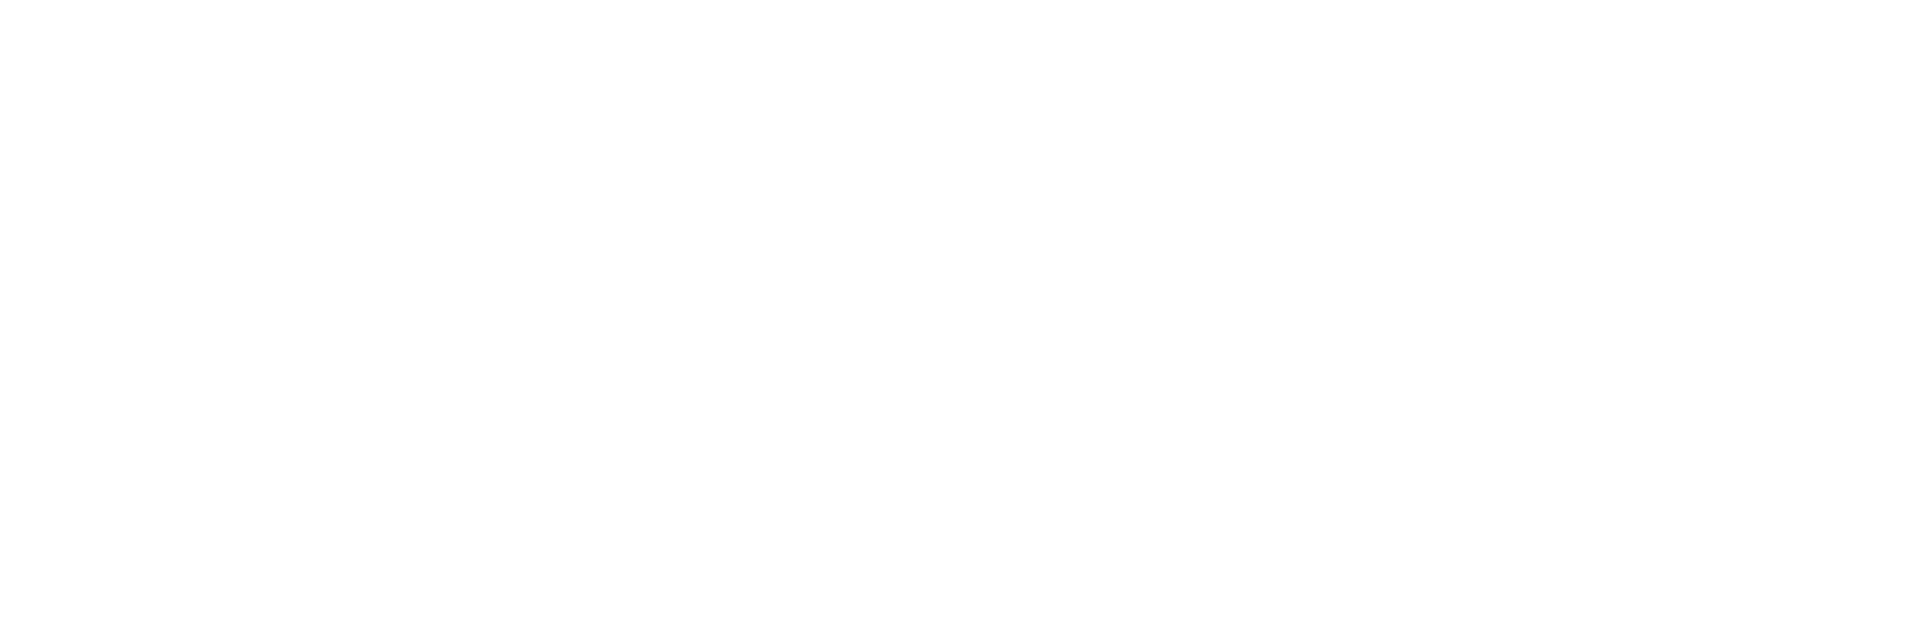 Seniorcarecenters Logo - Schnepp Senior Care & Rehab Center | A NexCare Managed Community